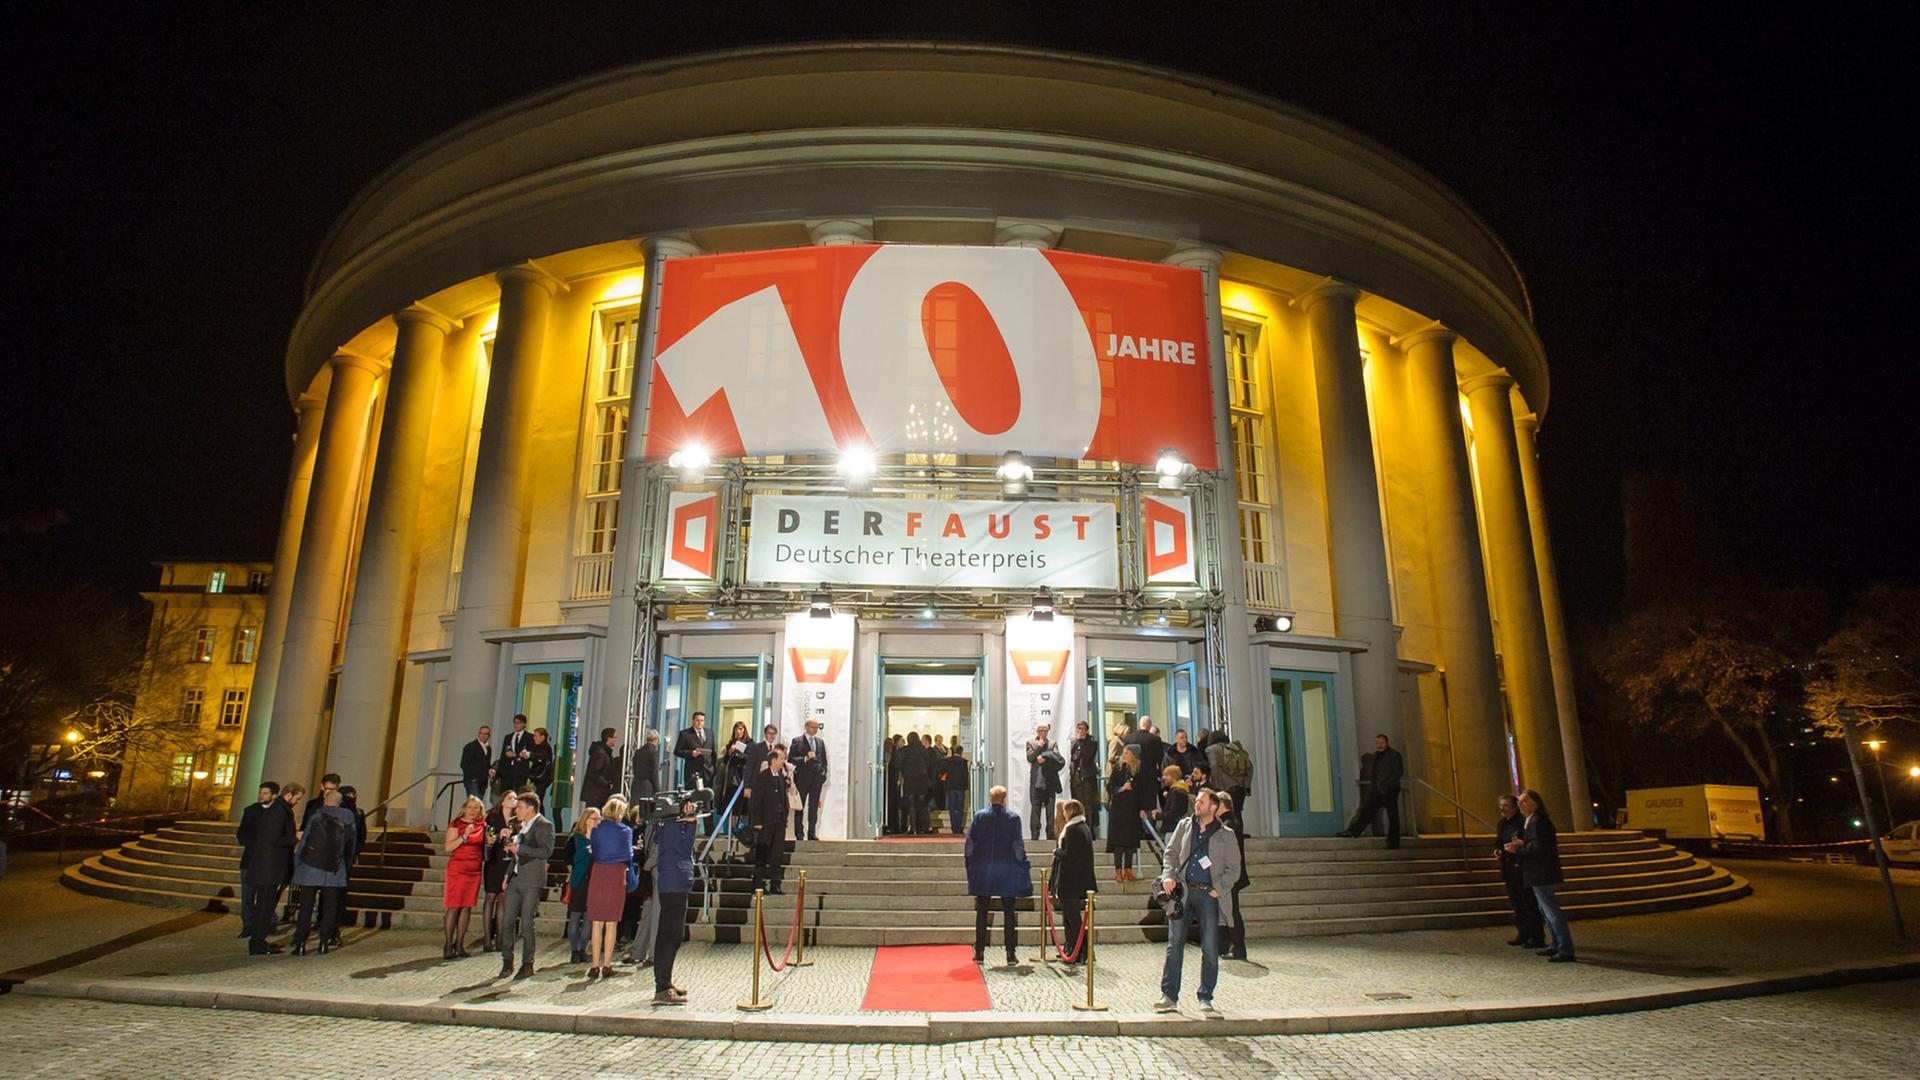 Im Saarländischen Staatstheater in Saarbrücken wird am 14.11.2015 der Theaterpreises des Deutschen Bühnenvereins DER FAUST verliehen.